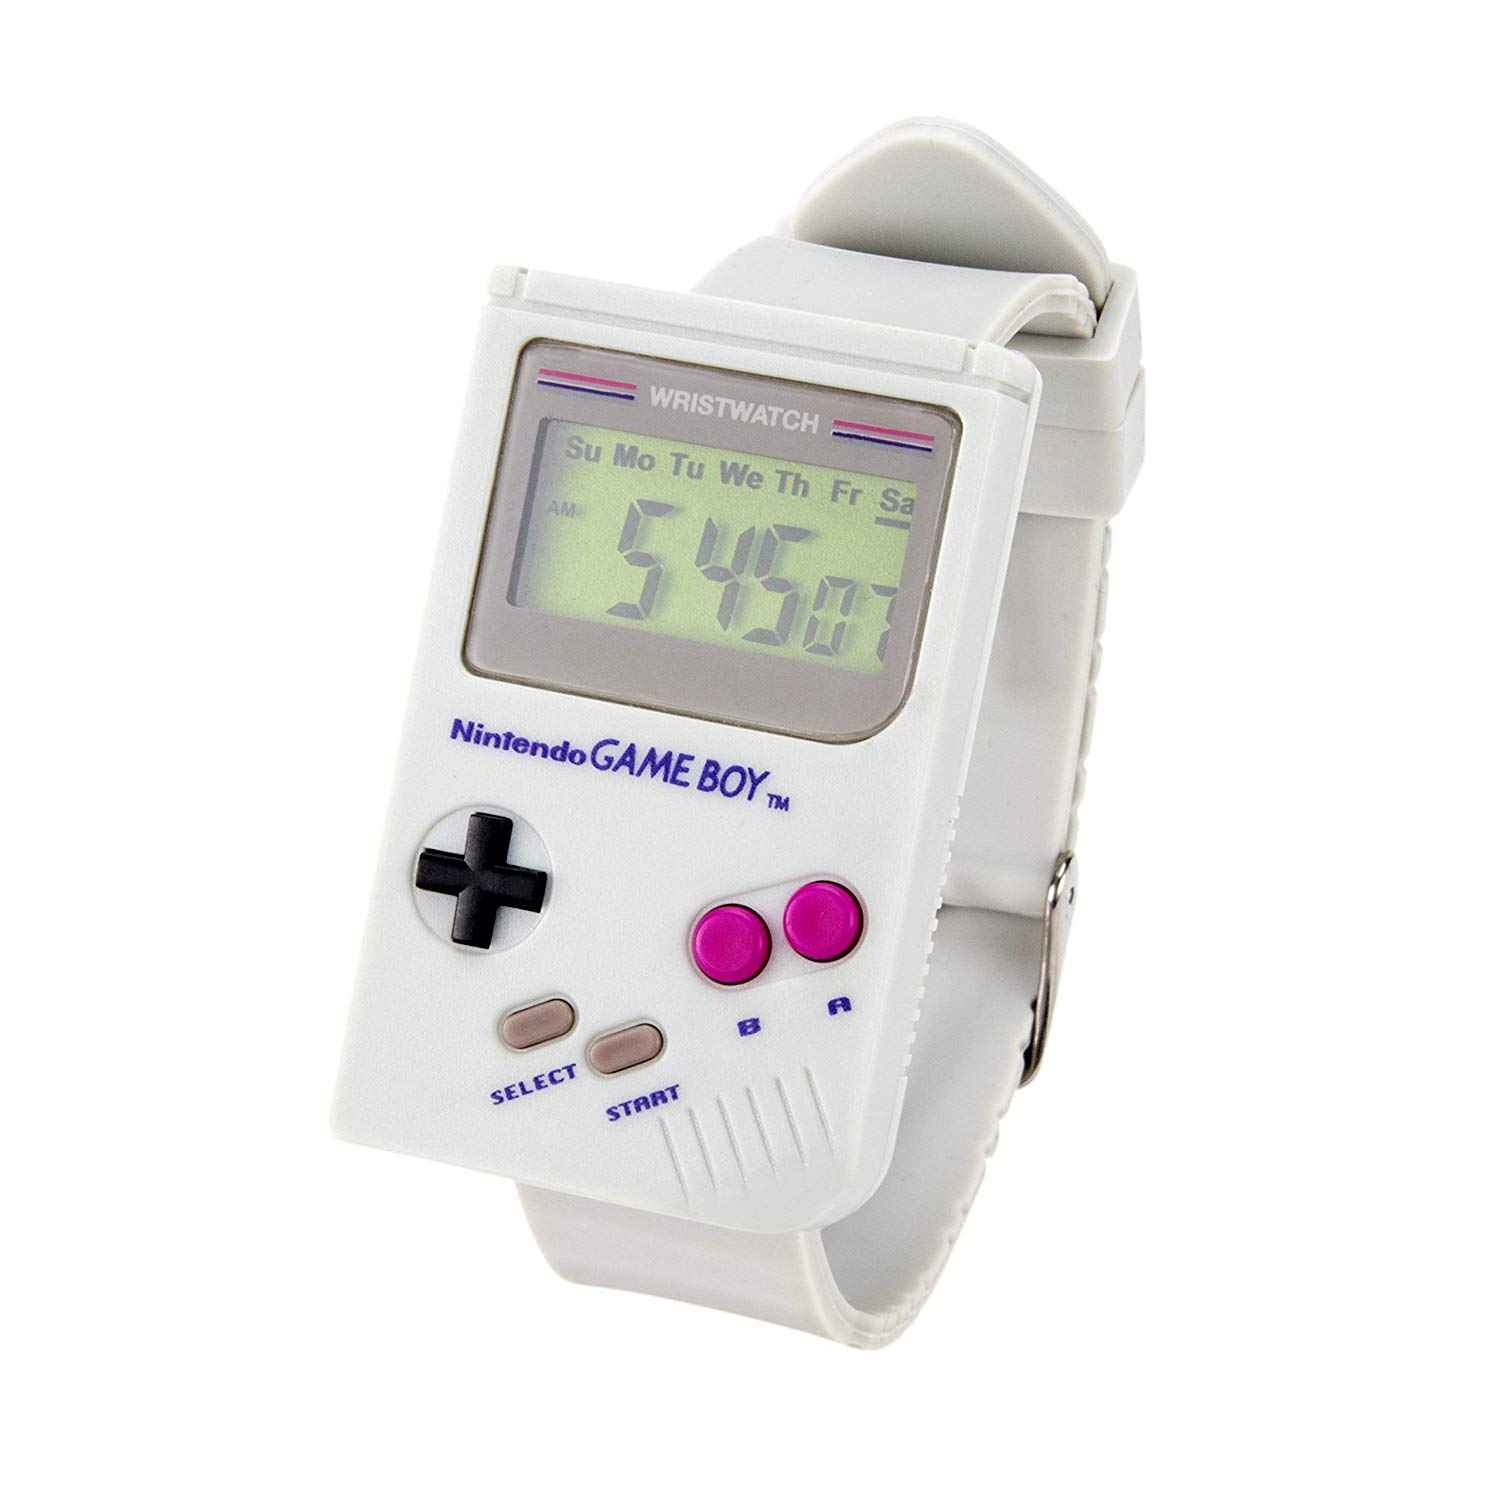 L'orologio da polso a forma di Game Boy